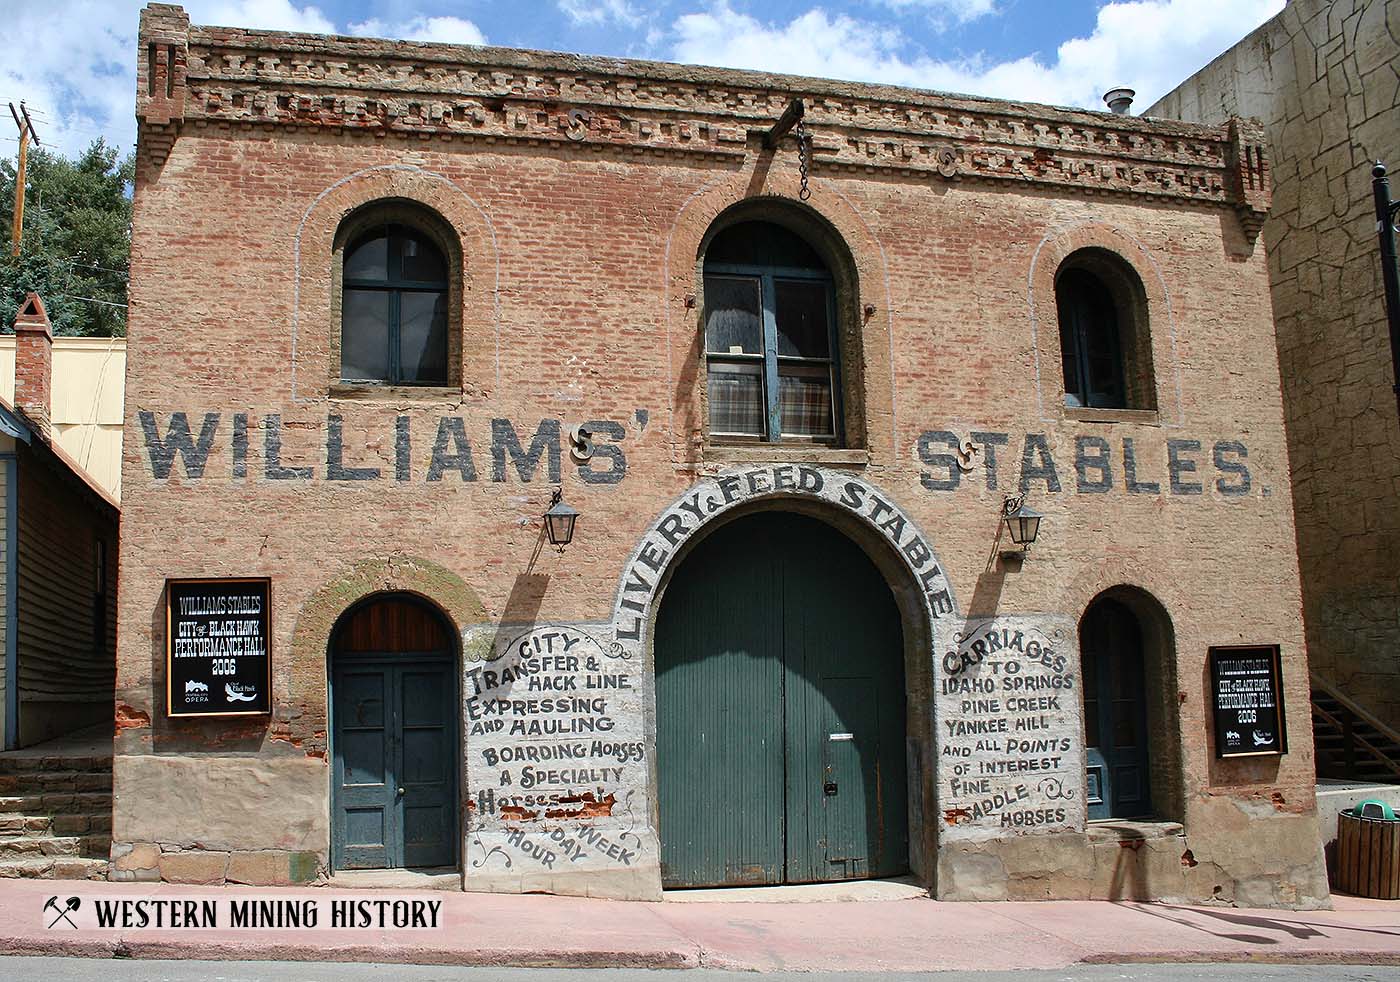 Williams Stables Building (1876) - Central City, Colorado